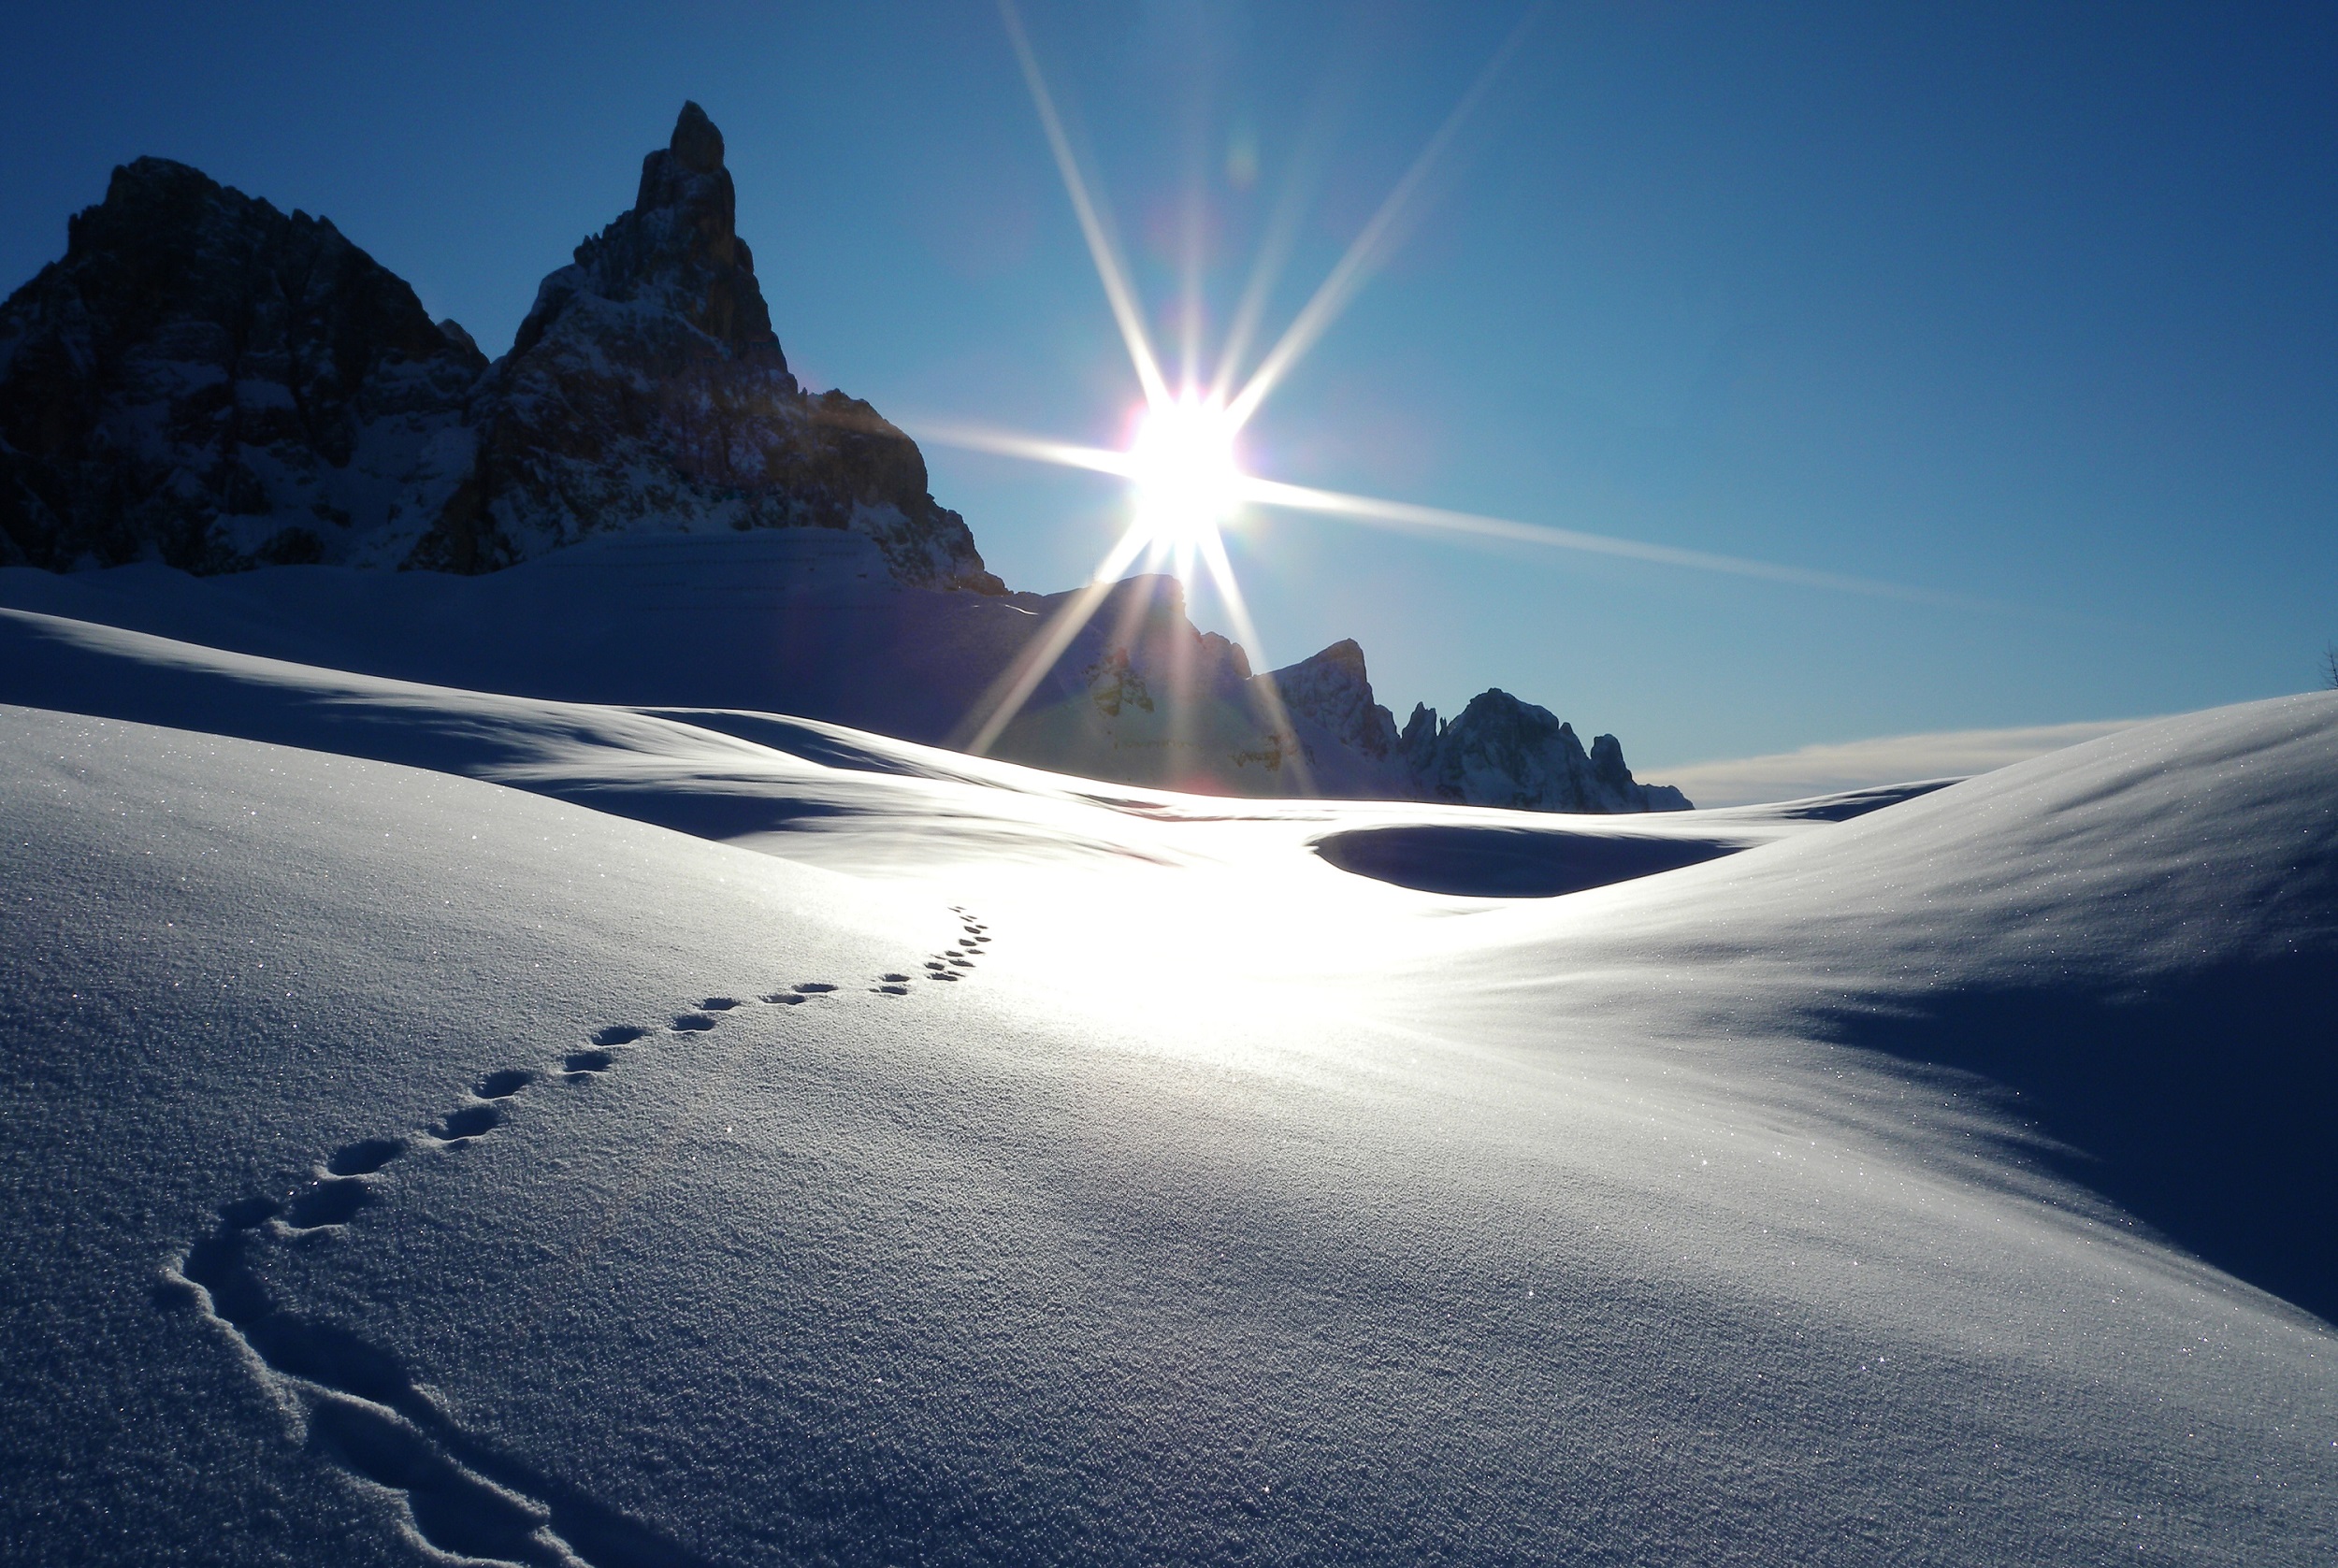 “Sentieri sotto la neve”: TORNA IL CONCORSO FOTOGRAFICO IN OMAGGIO A MARIO RIGONI STERN